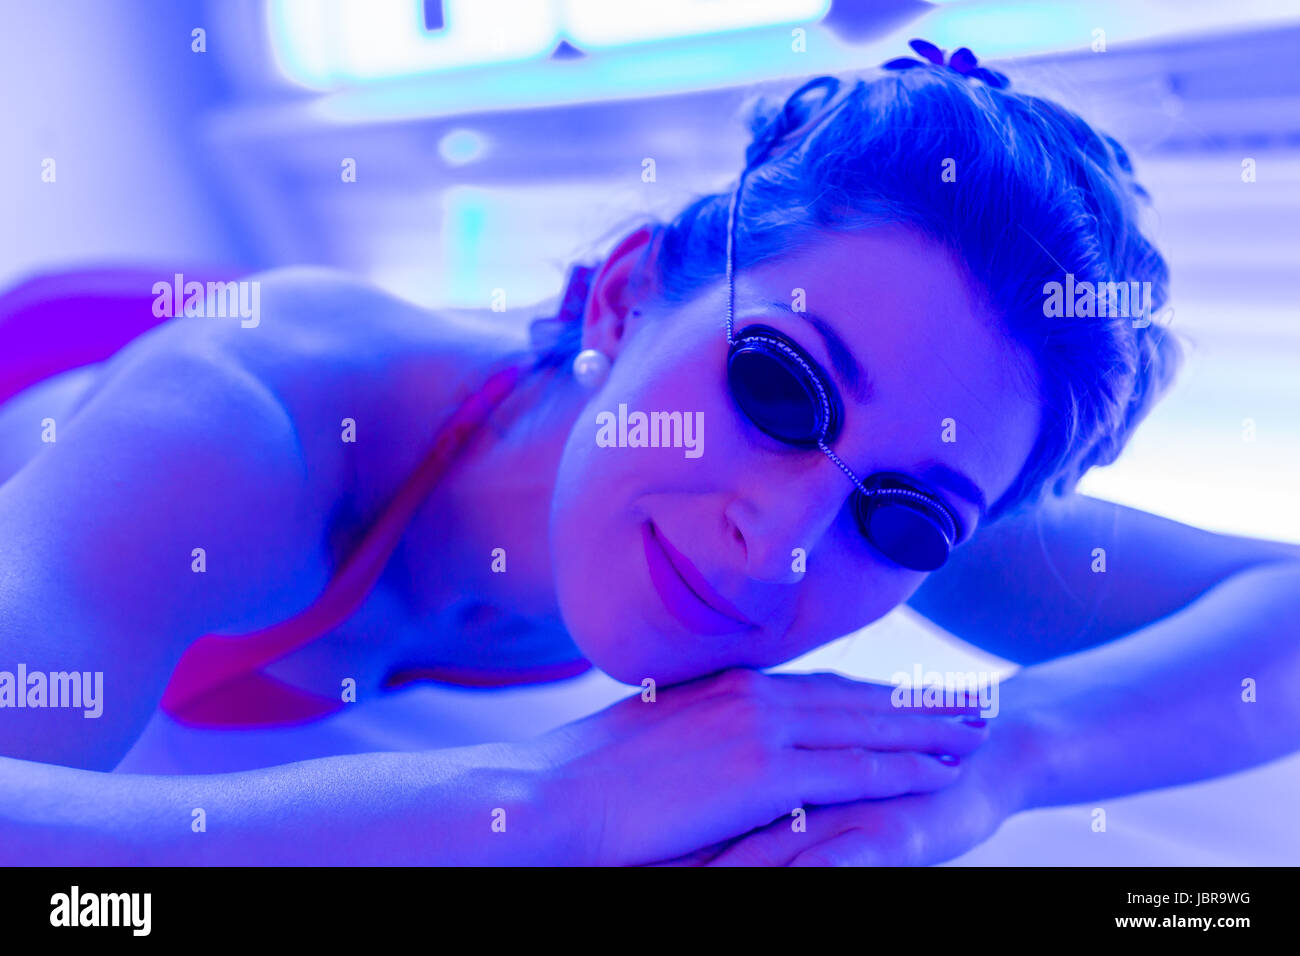 Woman in bikini tanning in wellness spa solarium Stock Photo